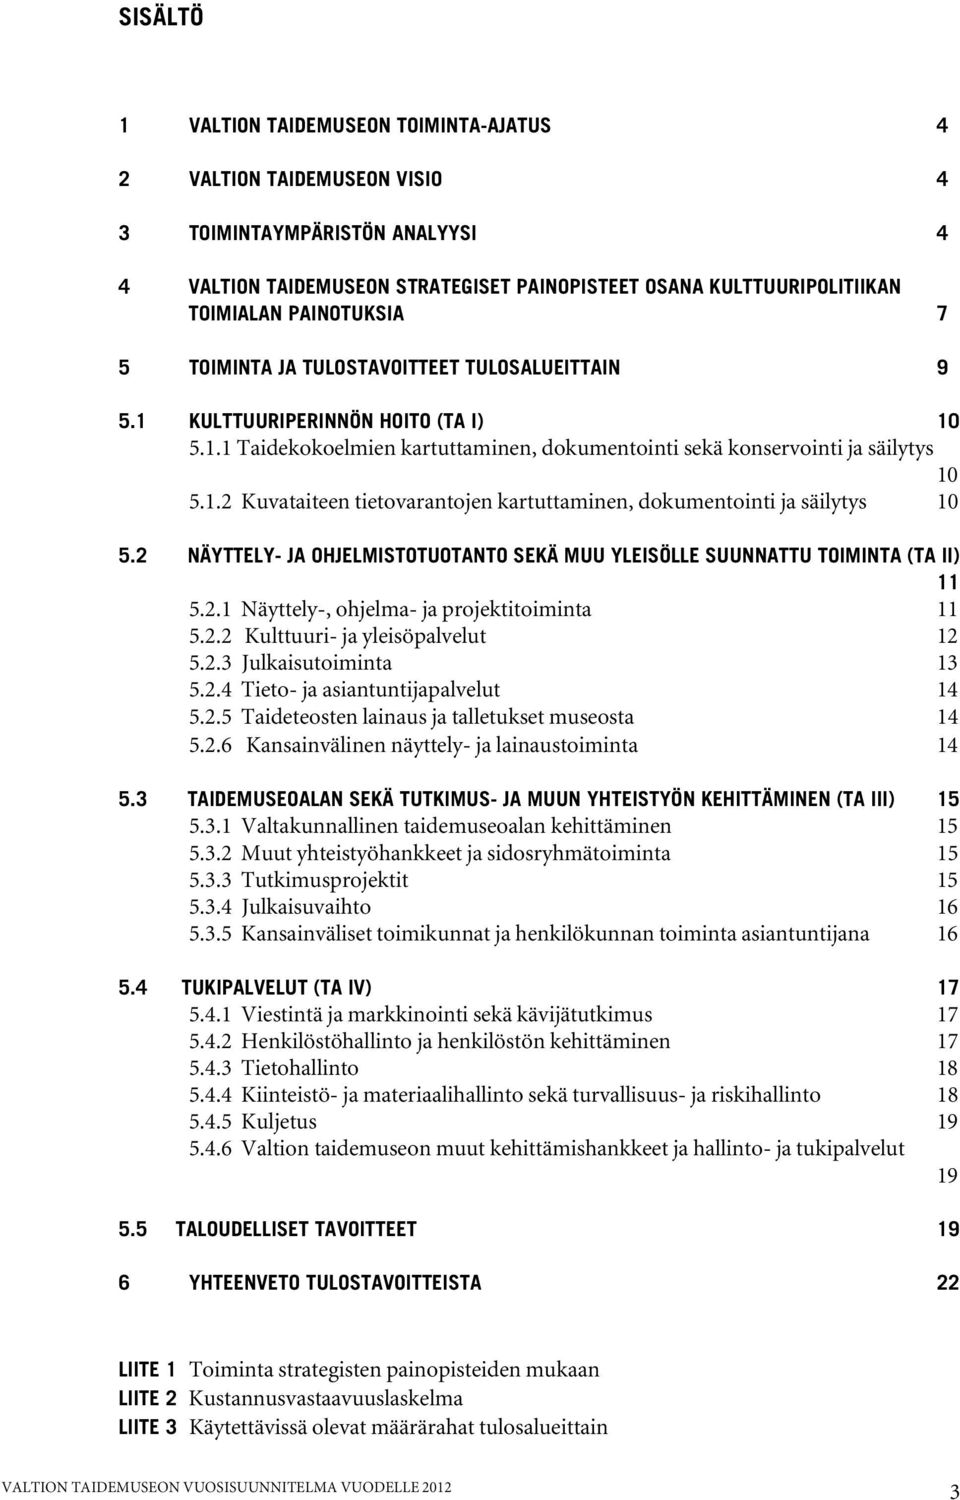 2 NÄYTTELY- JA OHJELMISTOTUOTANTO SEKÄ MUU YLEISÖLLE SUUNNATTU TOIMINTA (TA II) 11 5.2.1 Näyttely-, ohjelma- ja projektitoiminta 11 5.2.2 Kulttuuri- ja yleisöpalvelut 12 5.2.3 Julkaisutoiminta 13 5.2.4 Tieto- ja asiantuntijapalvelut 14 5.